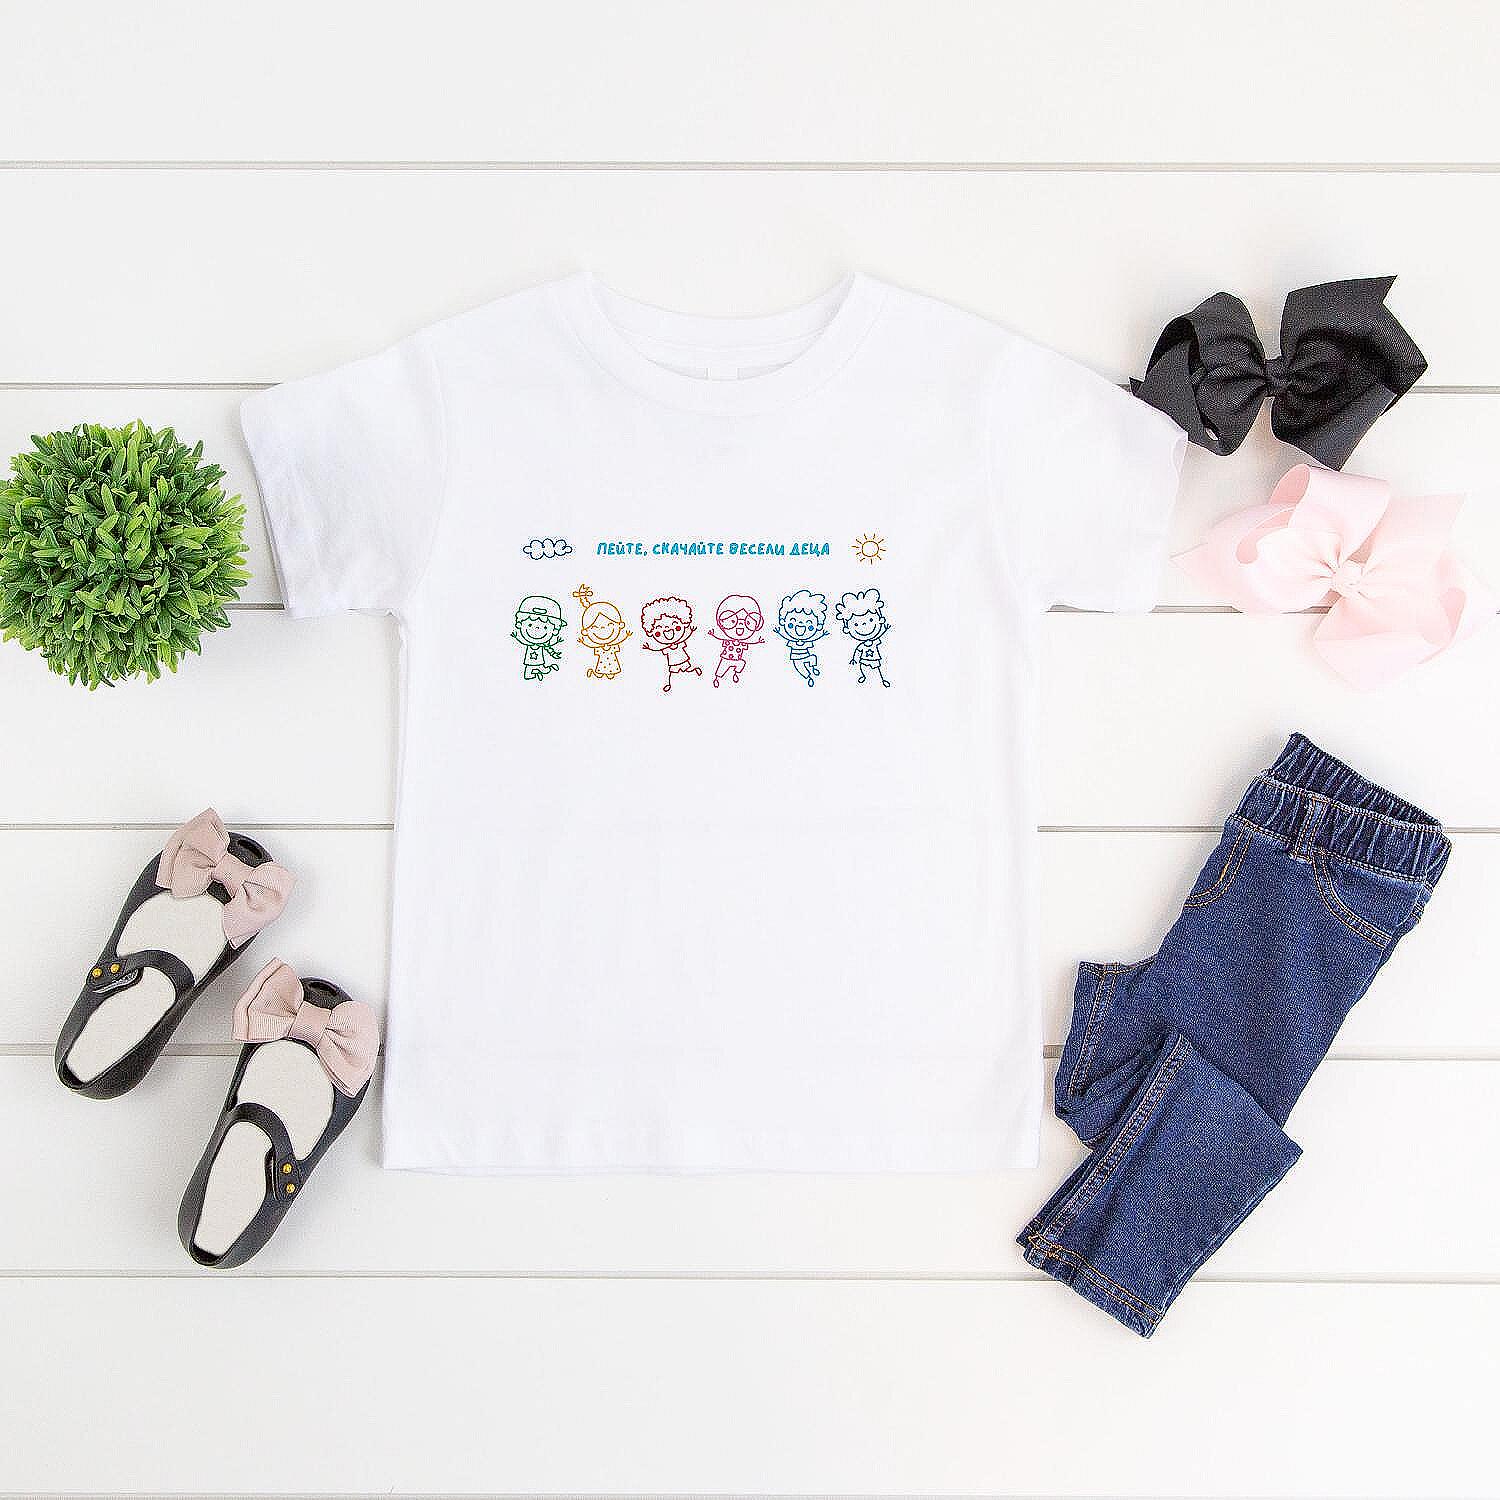 Детска Тениска „Пейте, скачайте весели деца“